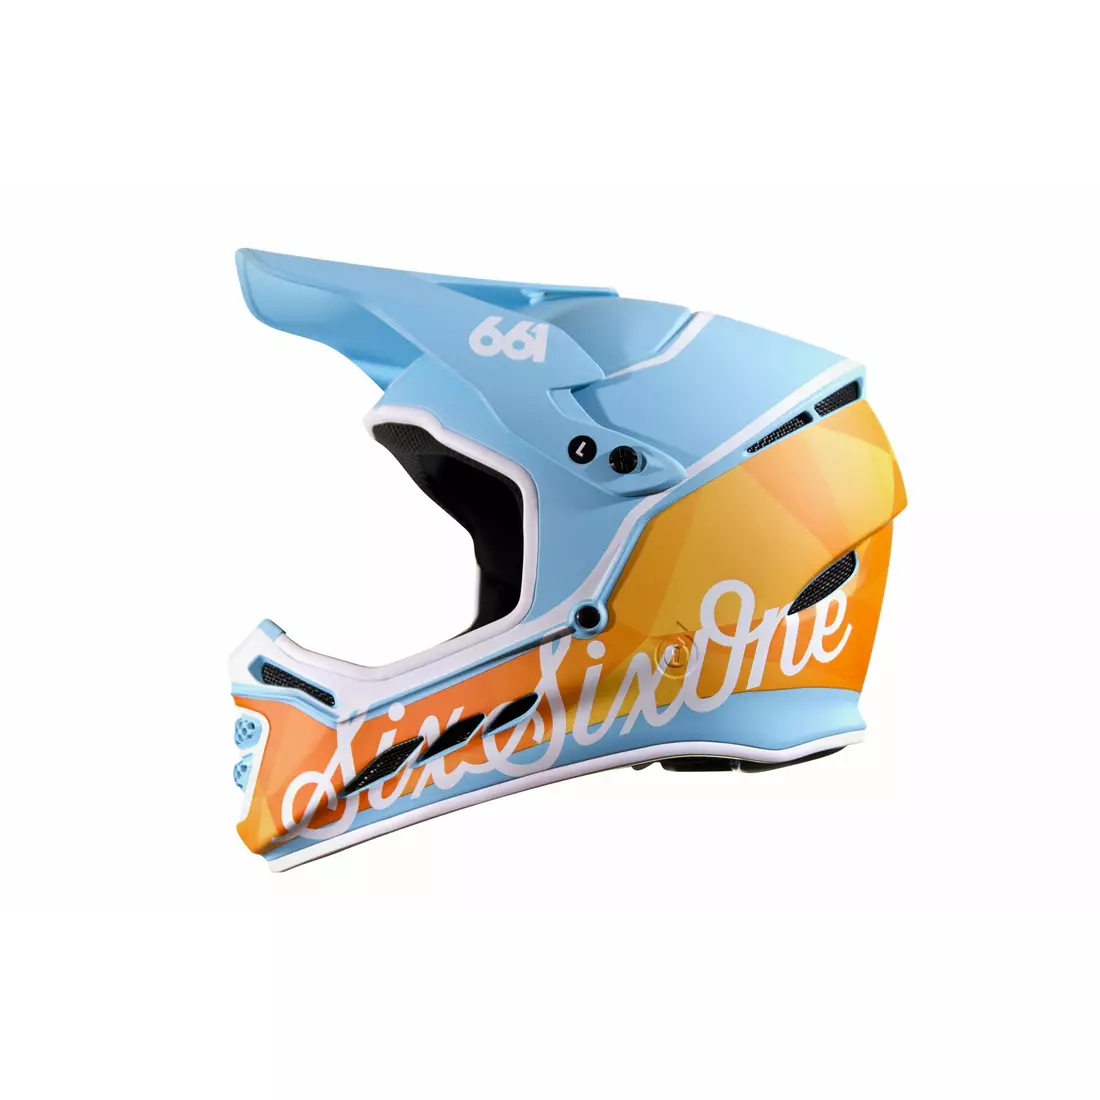 SisSixOne 661 RESET GEO BLORANGE MIPS Cască de bicicletă fullface albastru-portocaliu 